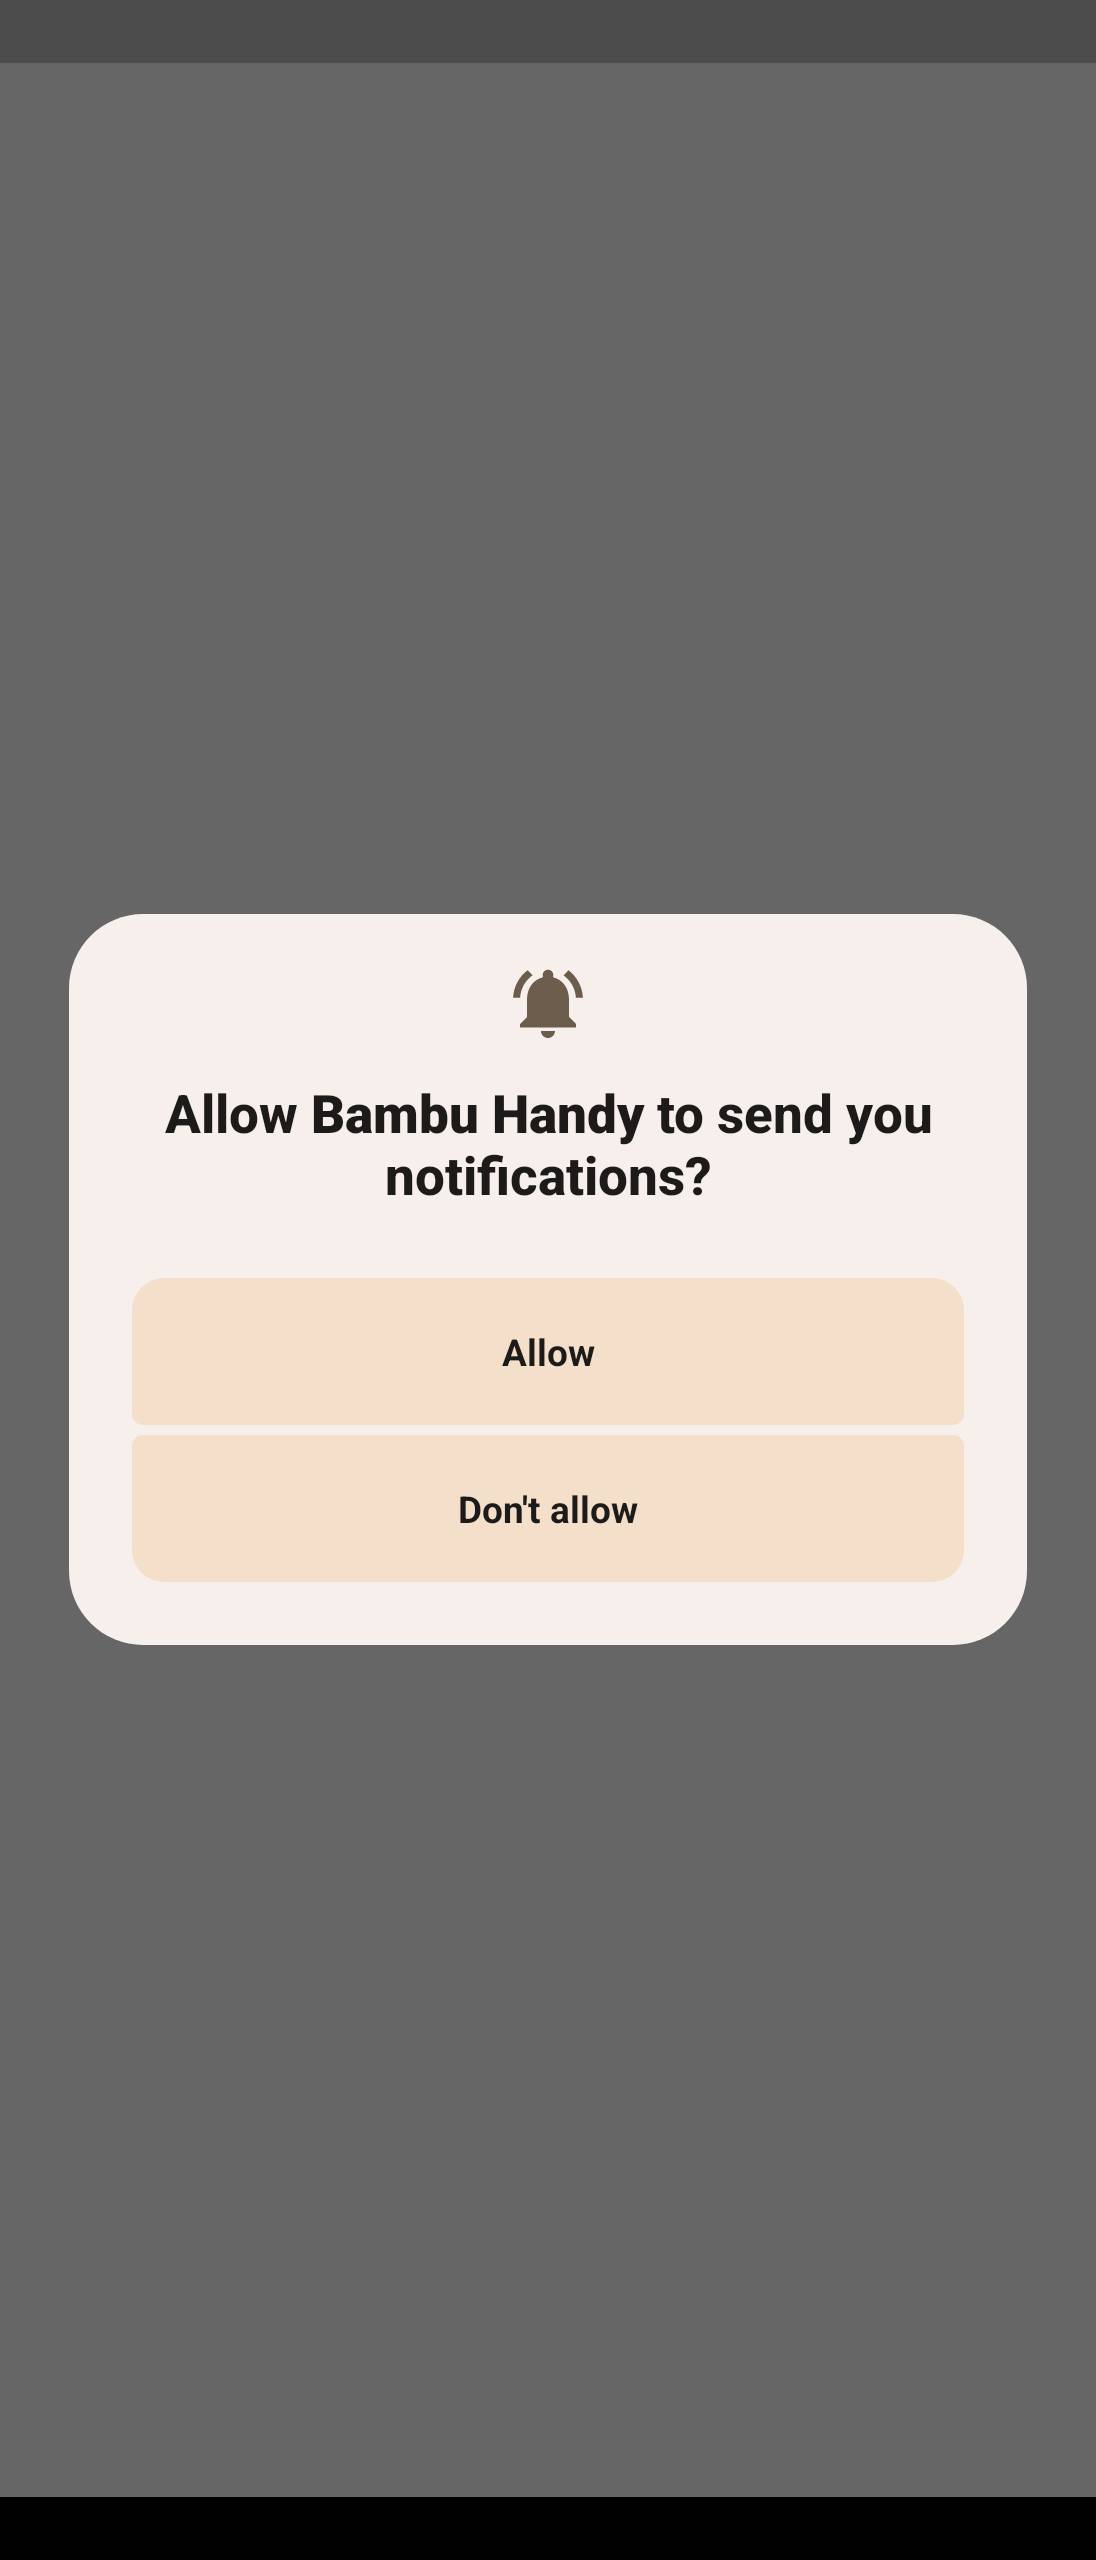 Bambu Handy Quick Start Guide